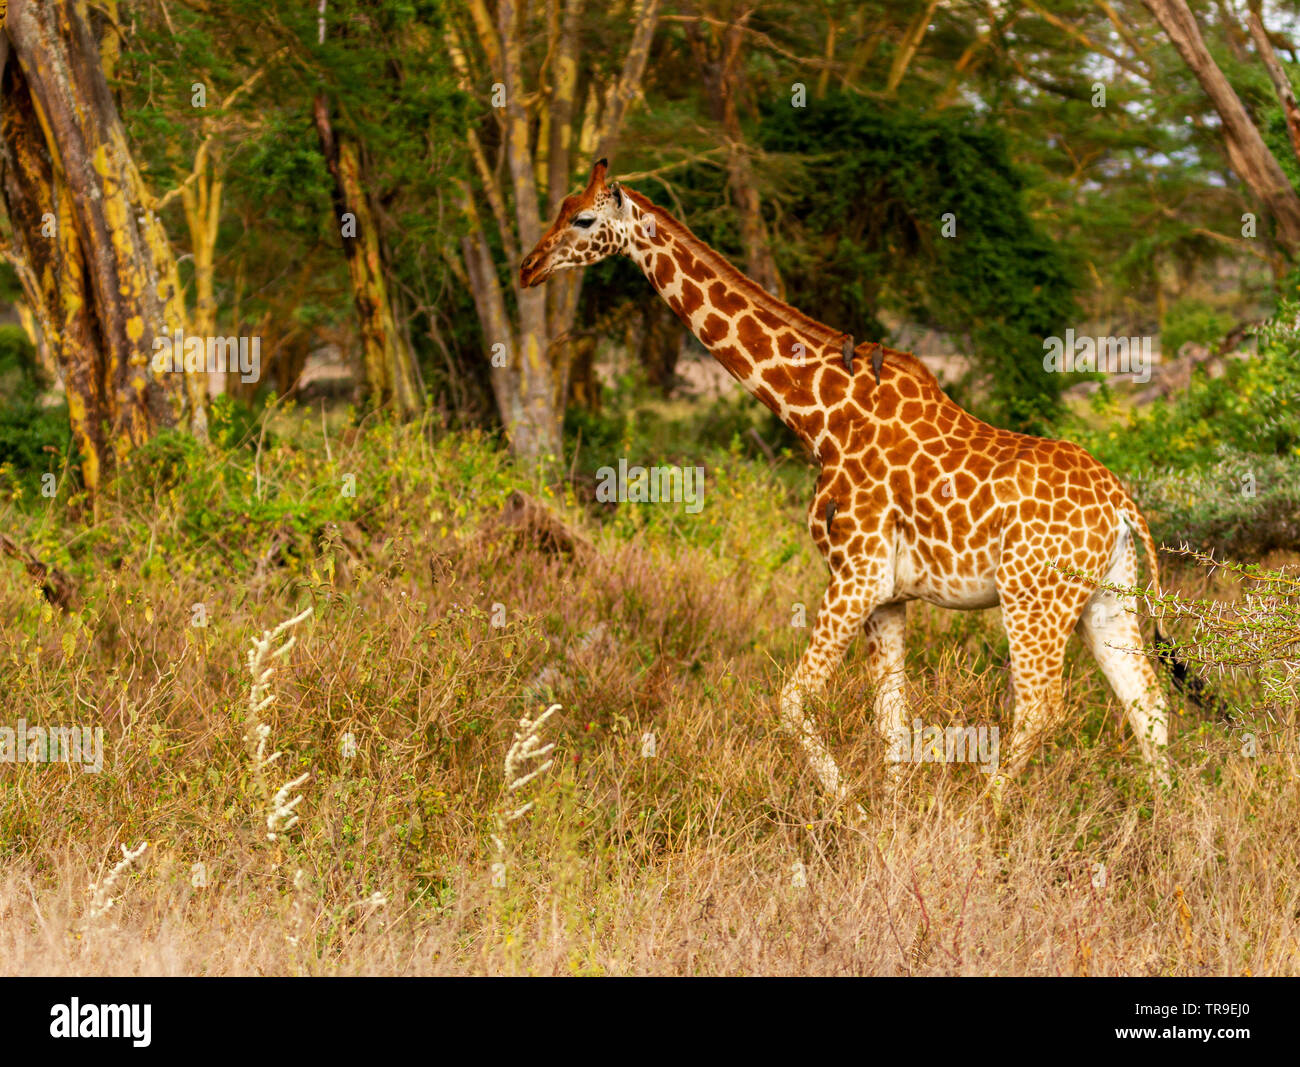 Rothschild Giraffa camelopardalis rothschildi girafe promenades à travers bois et arbres épineux Parc national du lac Nakuru Kenya Afrique de l'Est Banque D'Images